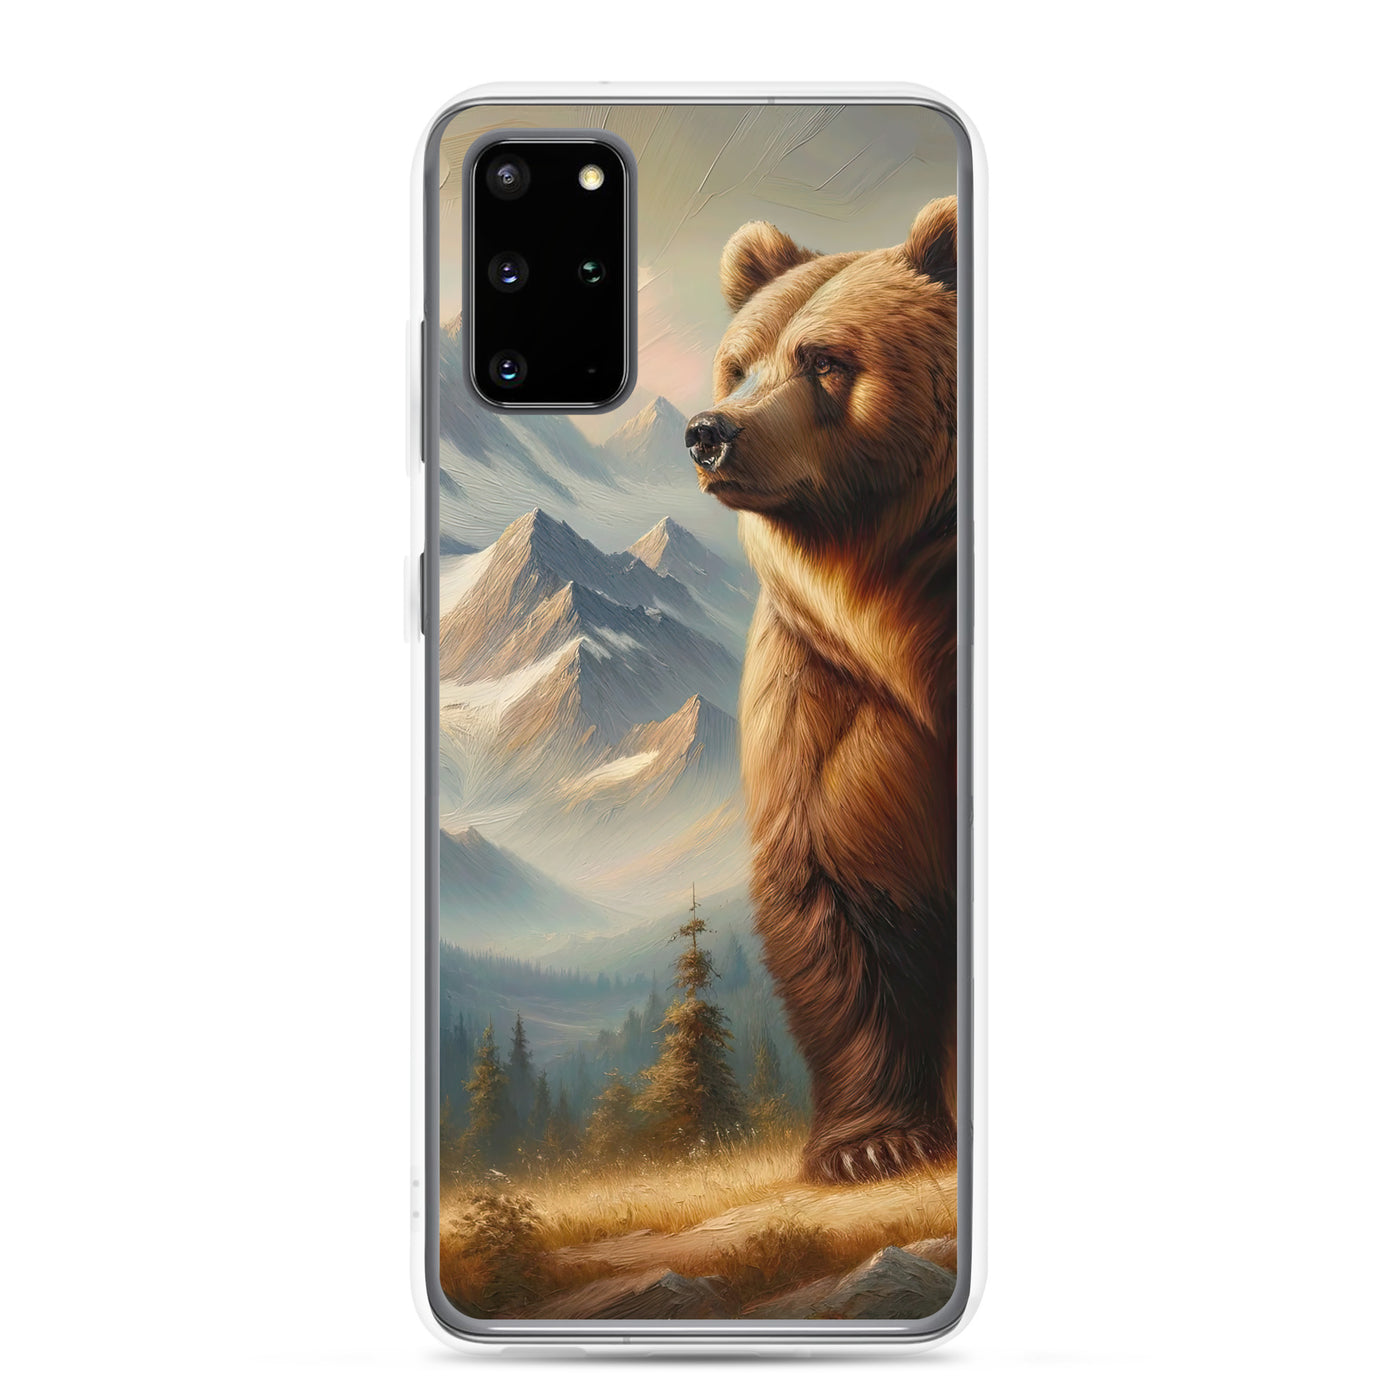 Ölgemälde eines königlichen Bären vor der majestätischen Alpenkulisse - Samsung Schutzhülle (durchsichtig) camping xxx yyy zzz Samsung Galaxy S20 Plus